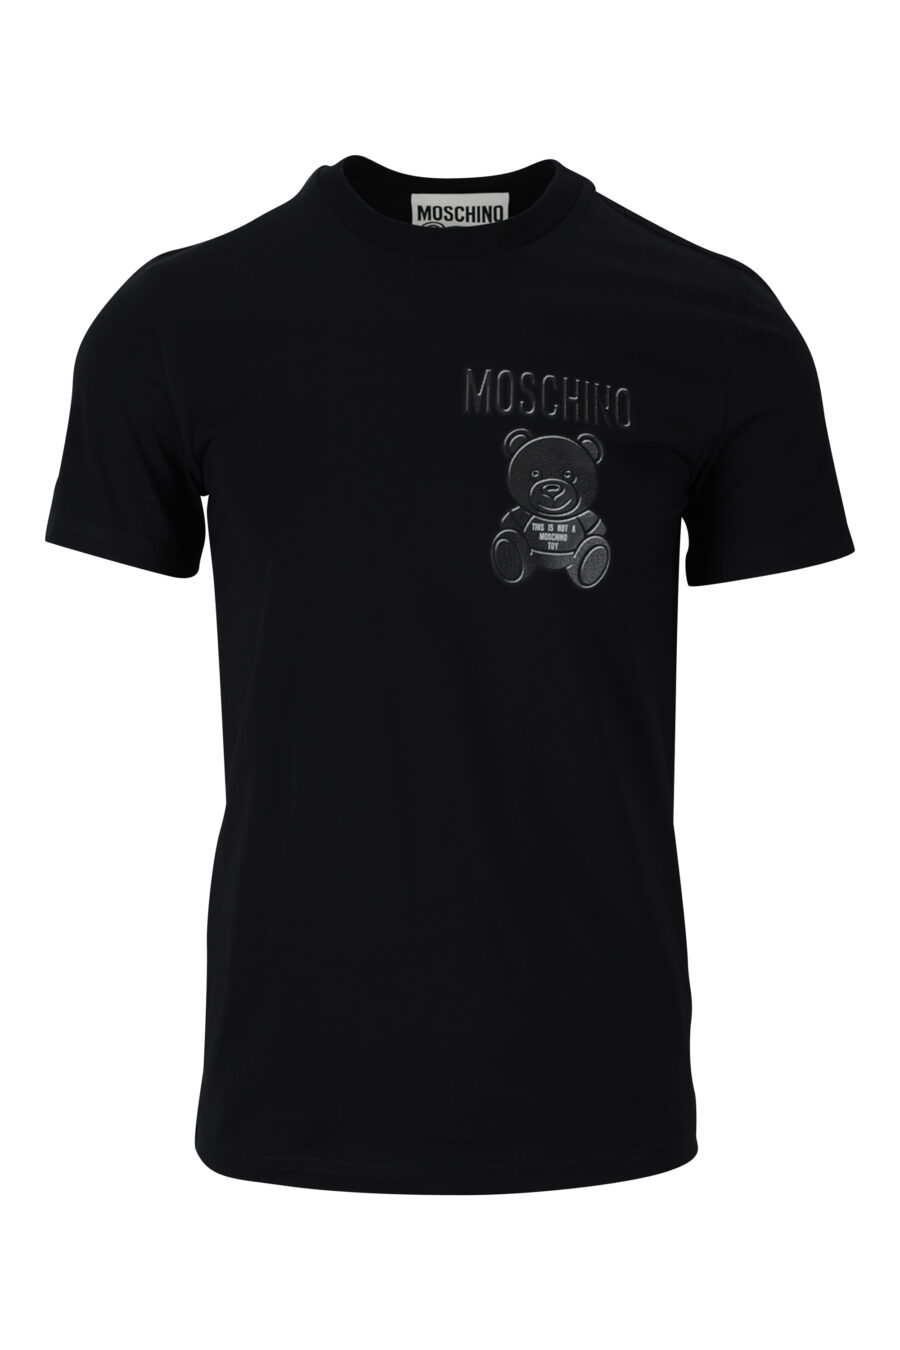 T-shirt preta em algodão ecológico com mini-logotipo "teddy" - 889316853124